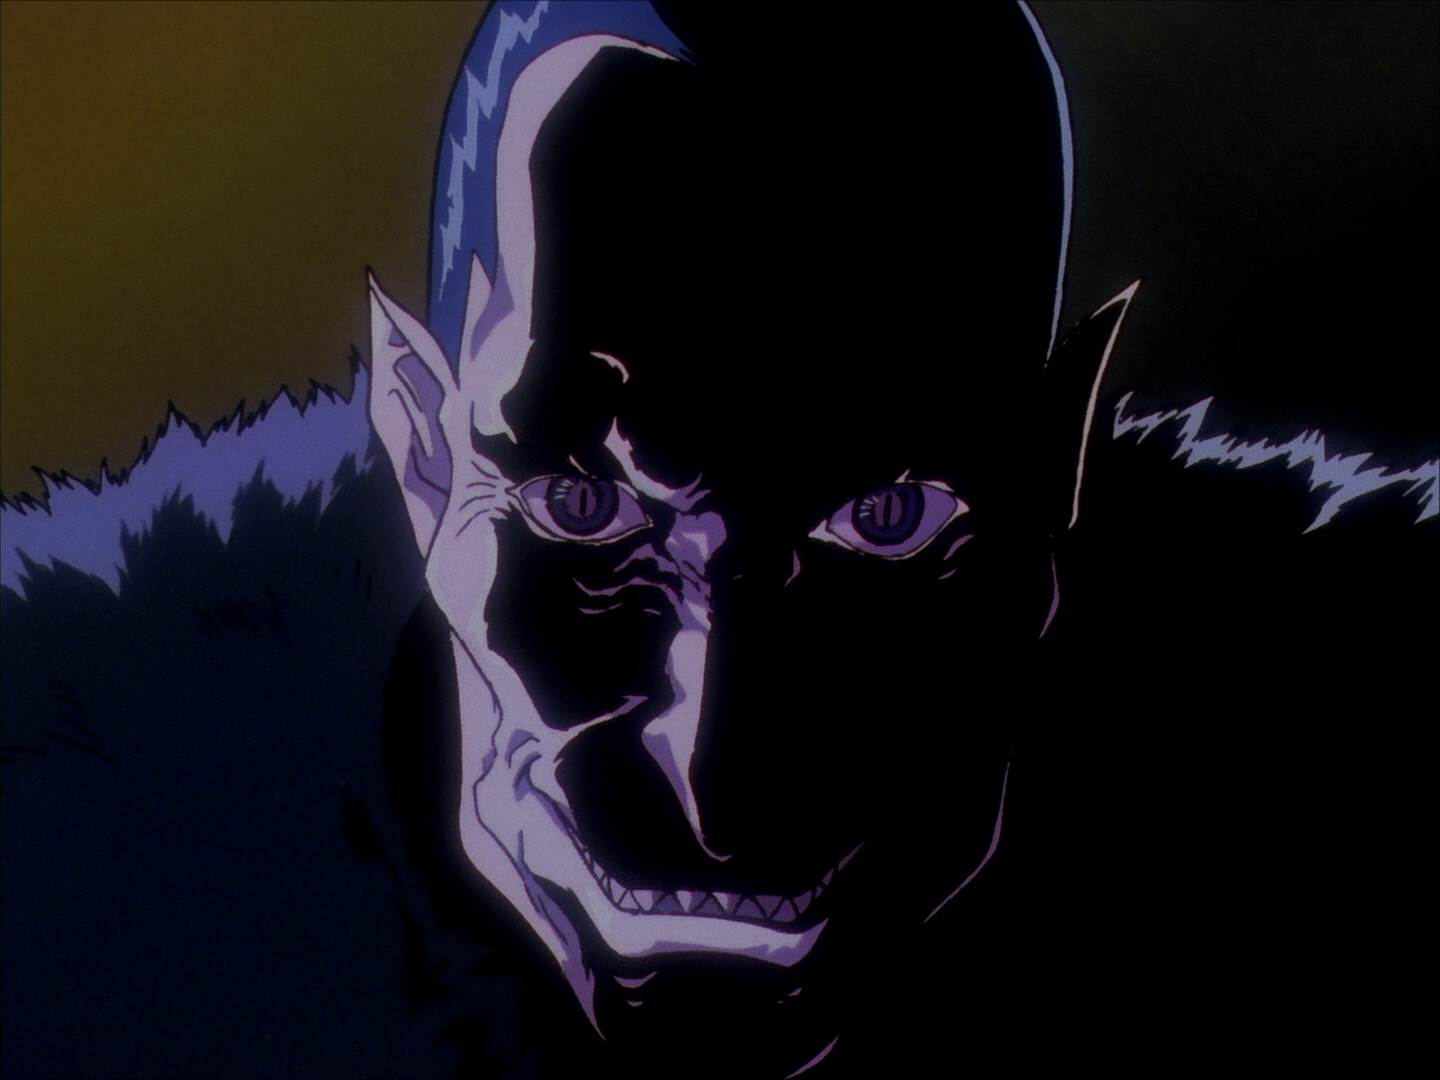 BERSERK 1997 Anime Episode 1 - 5 : BLIND REACTION